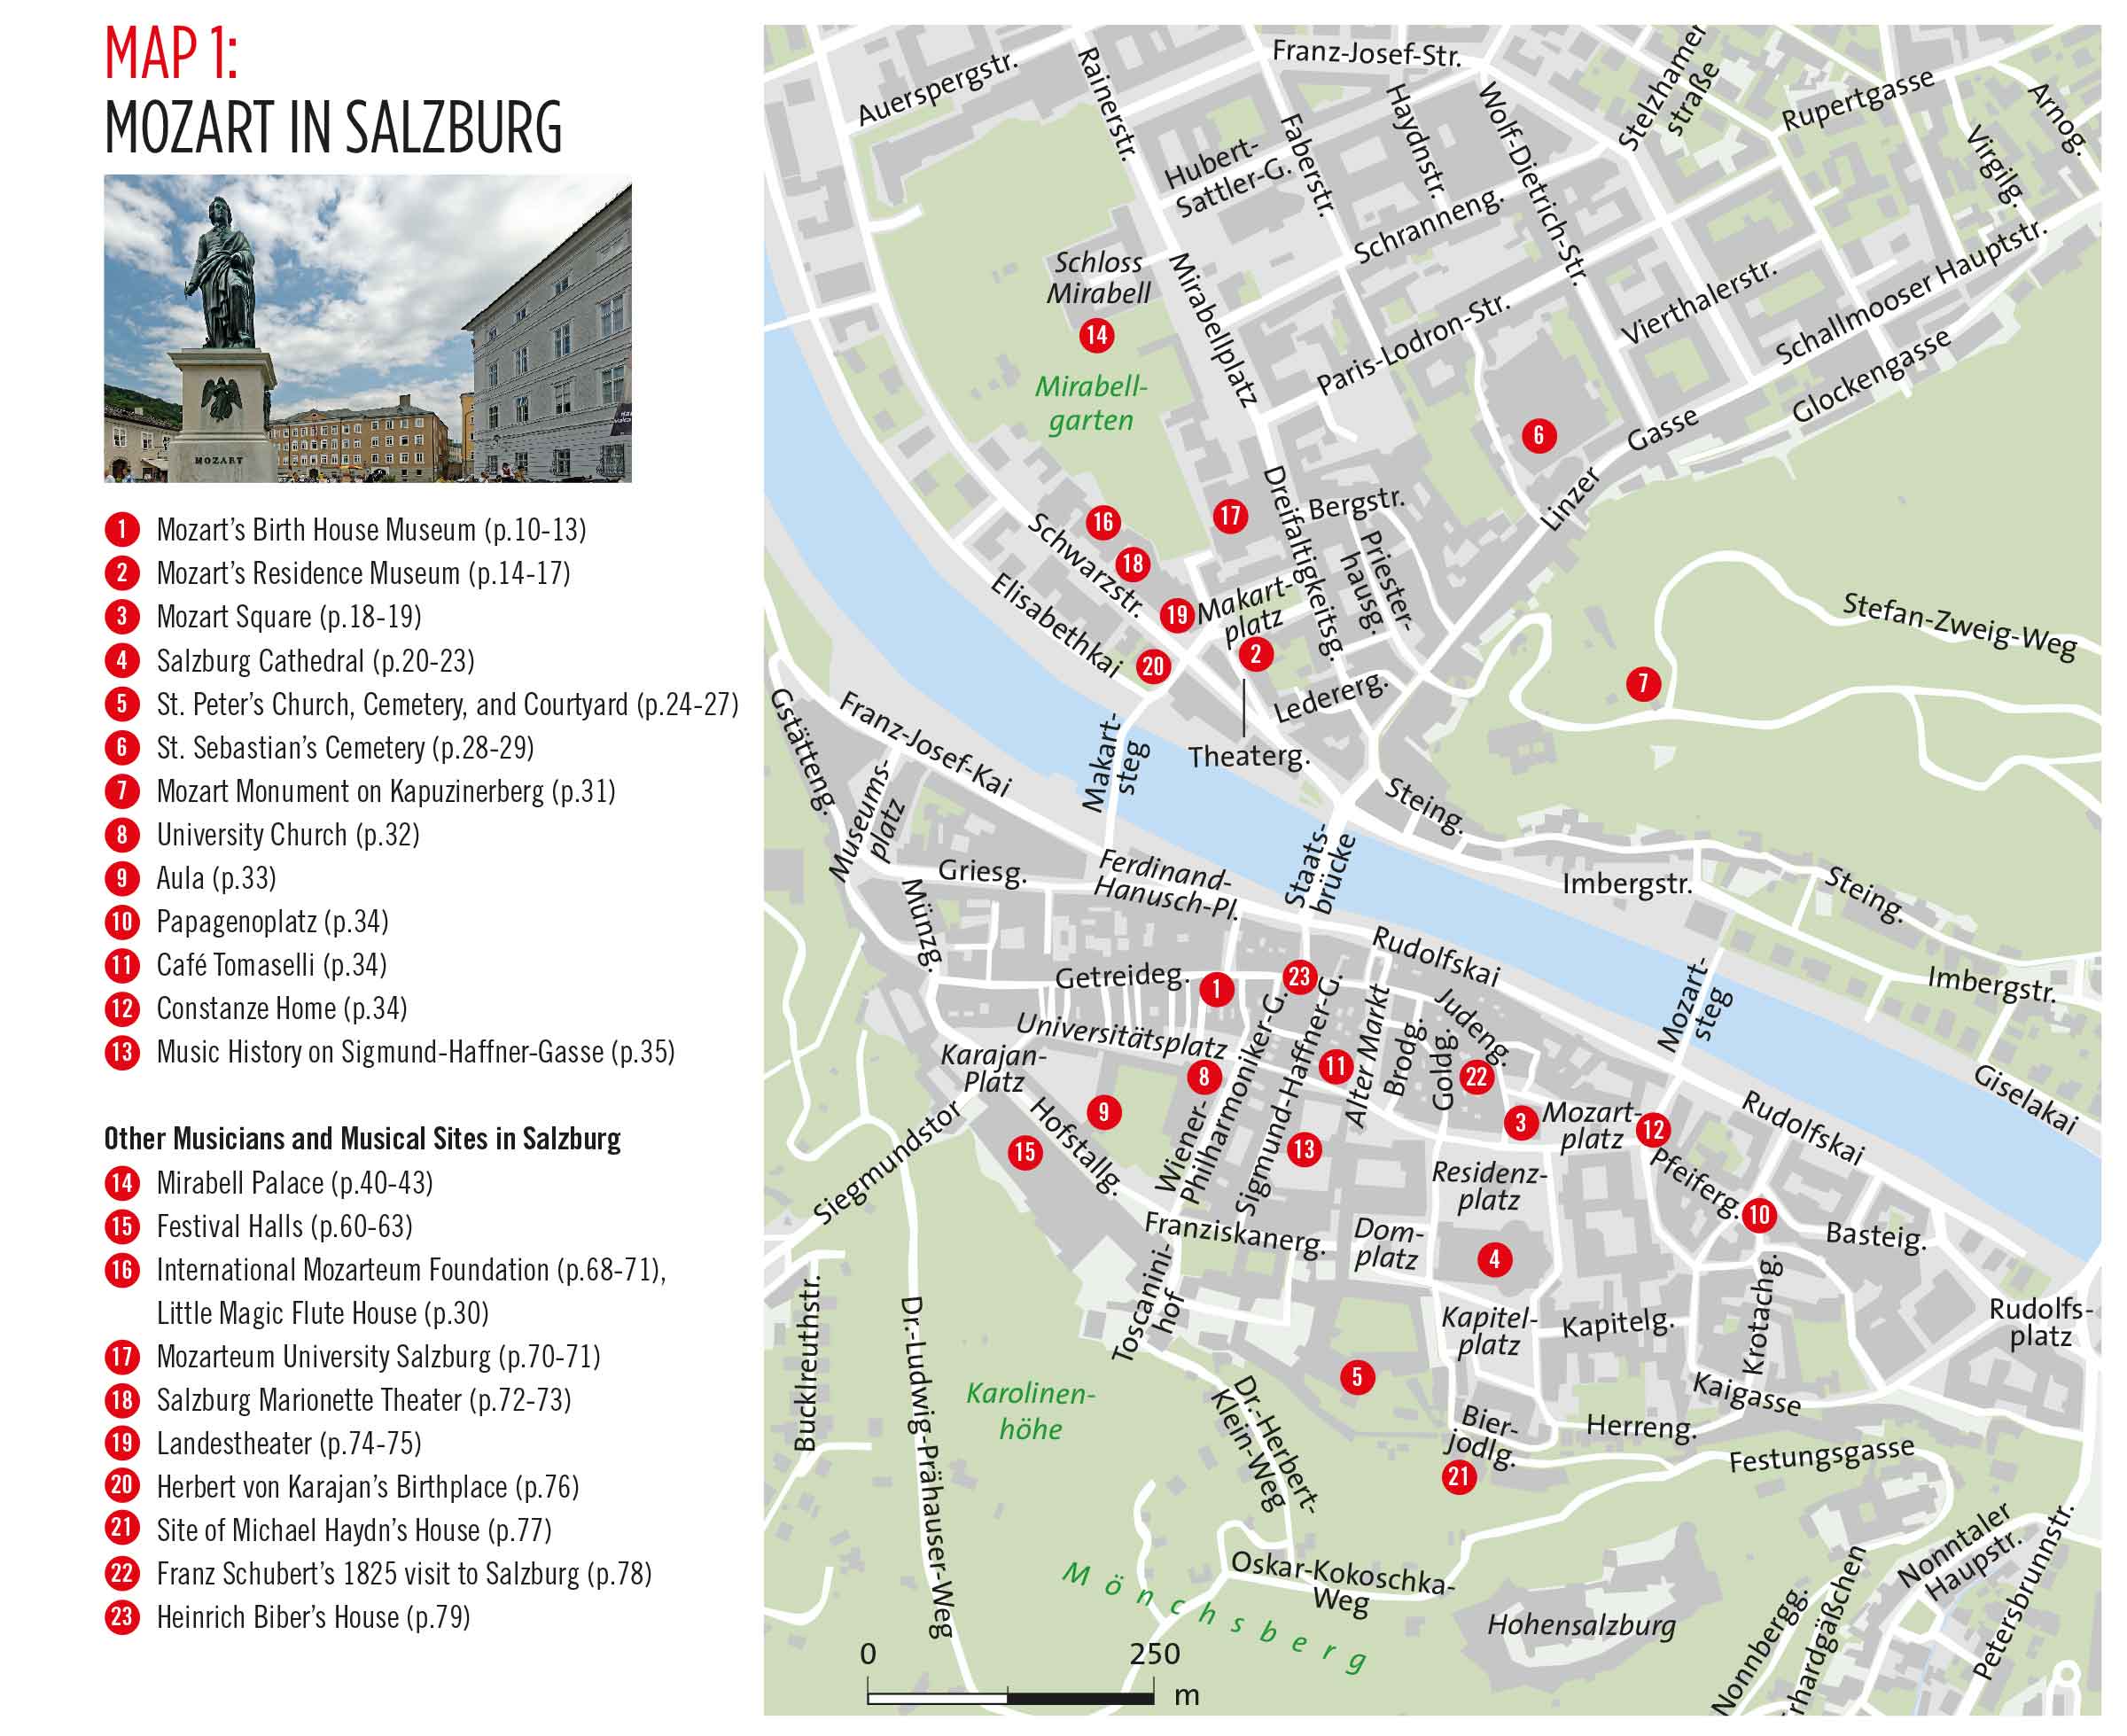 salzburg-music-guide-doblinger-david-nelson-classical-music-05